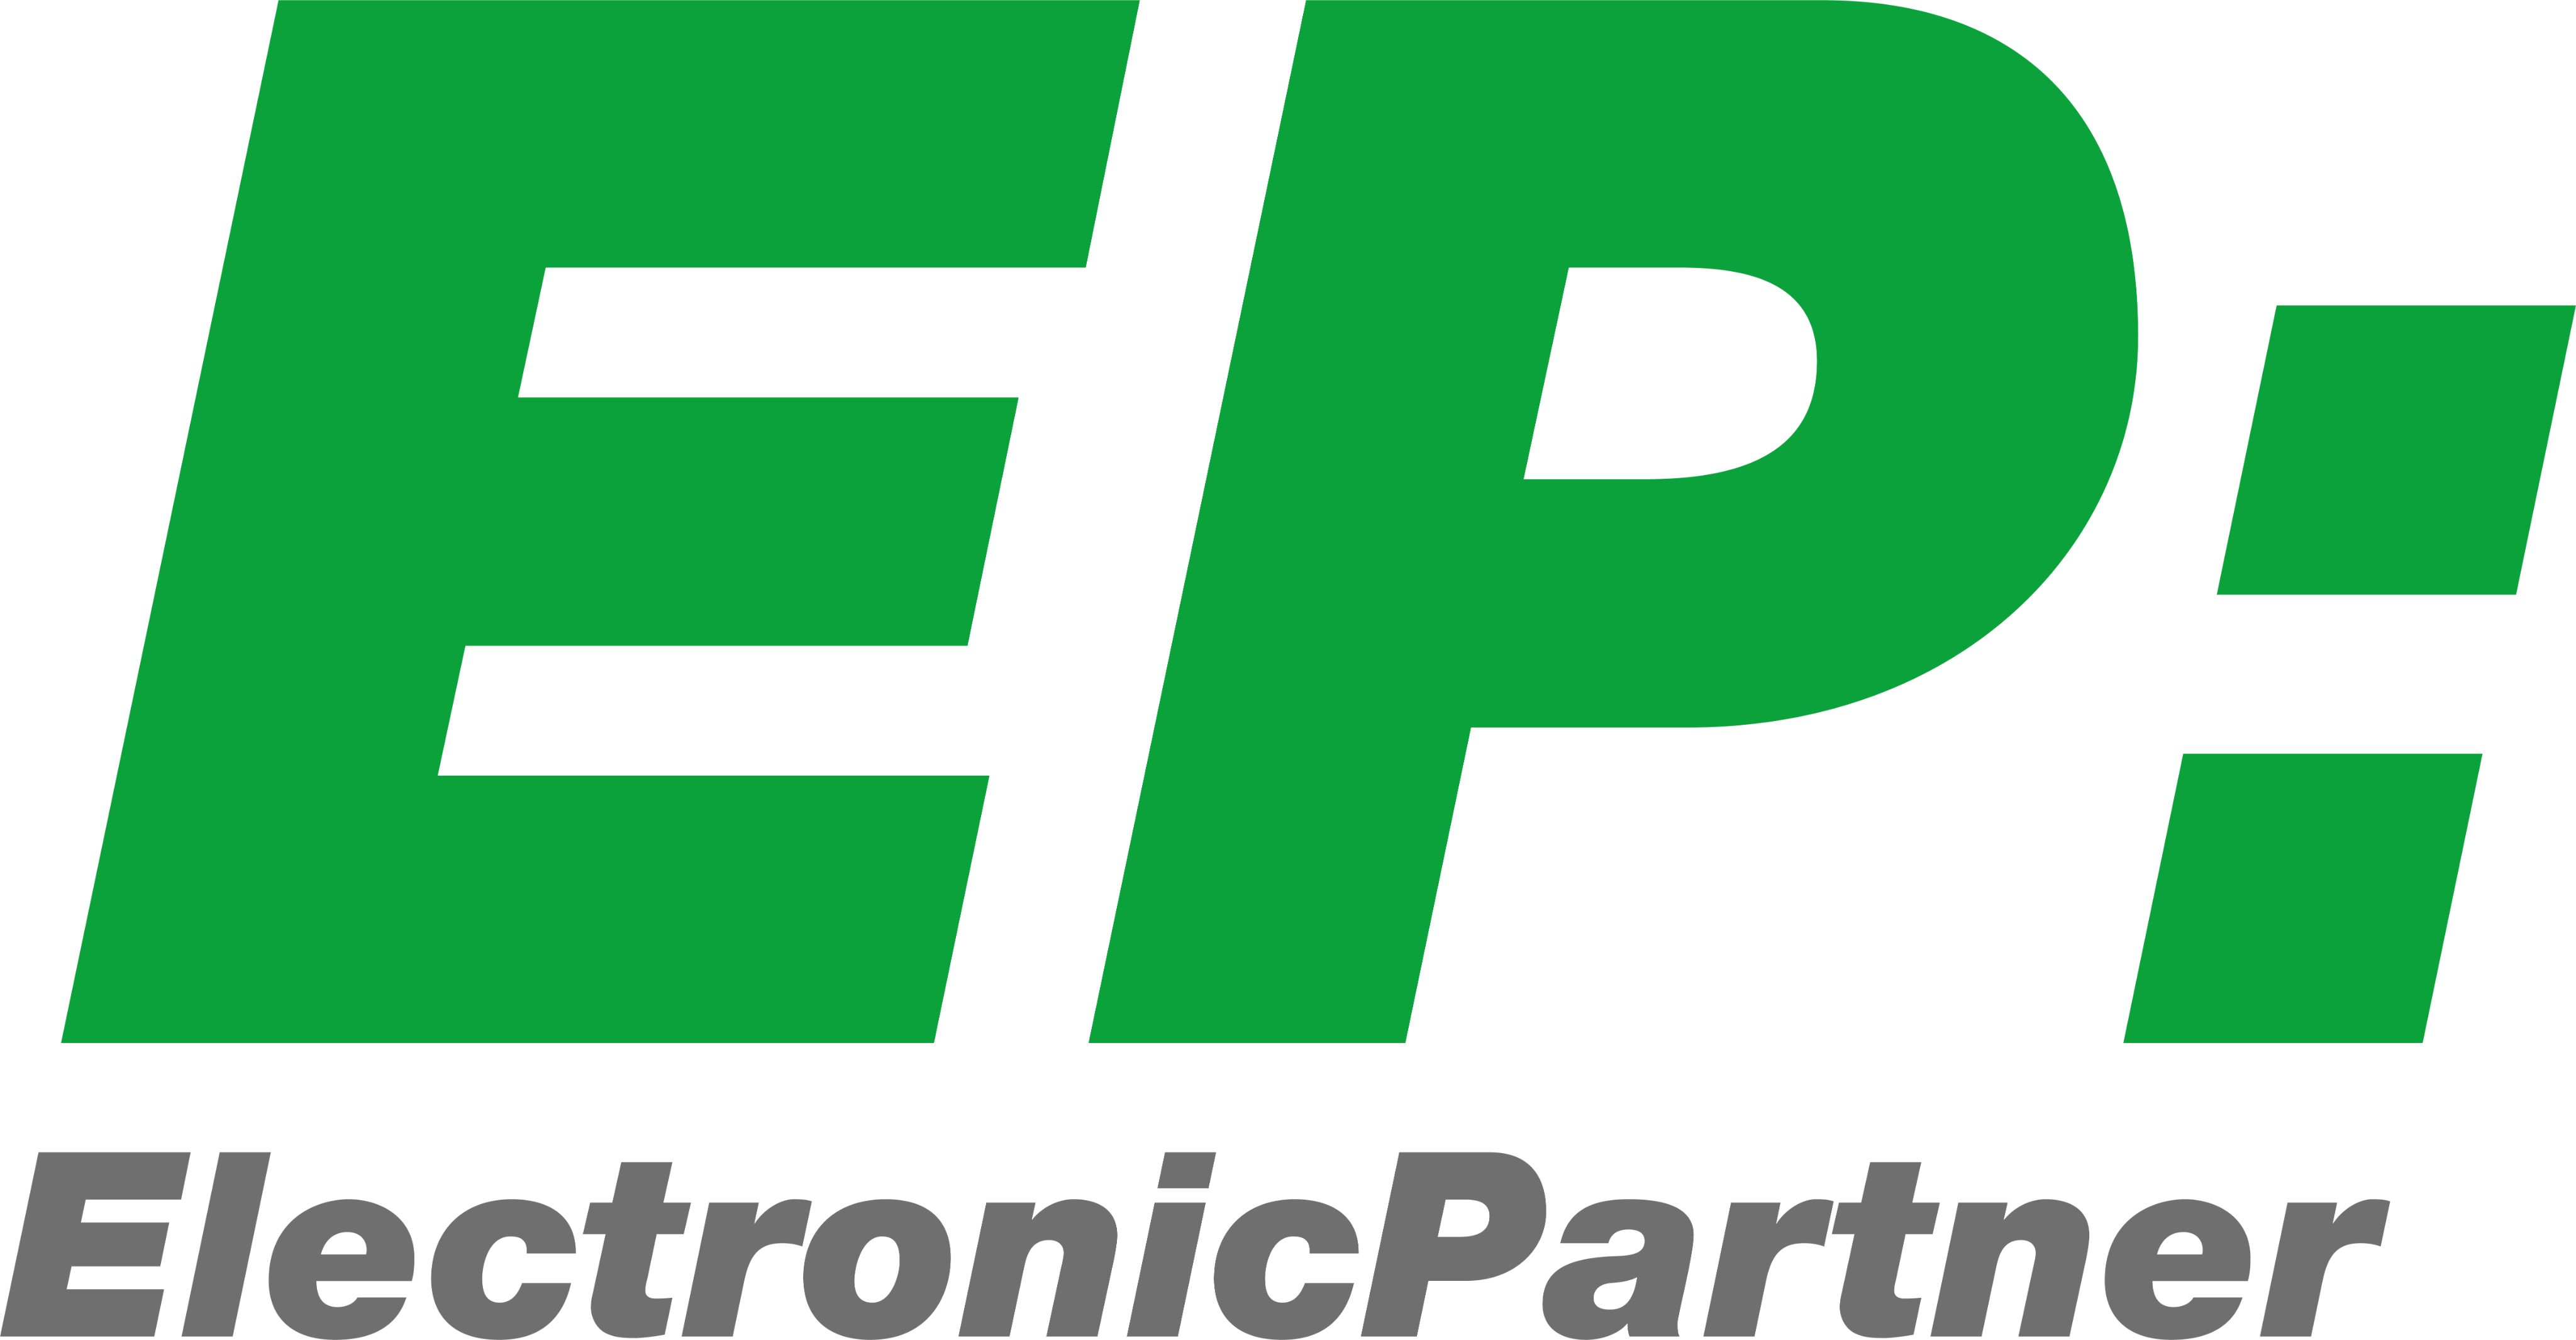 Electronic Partner Logo